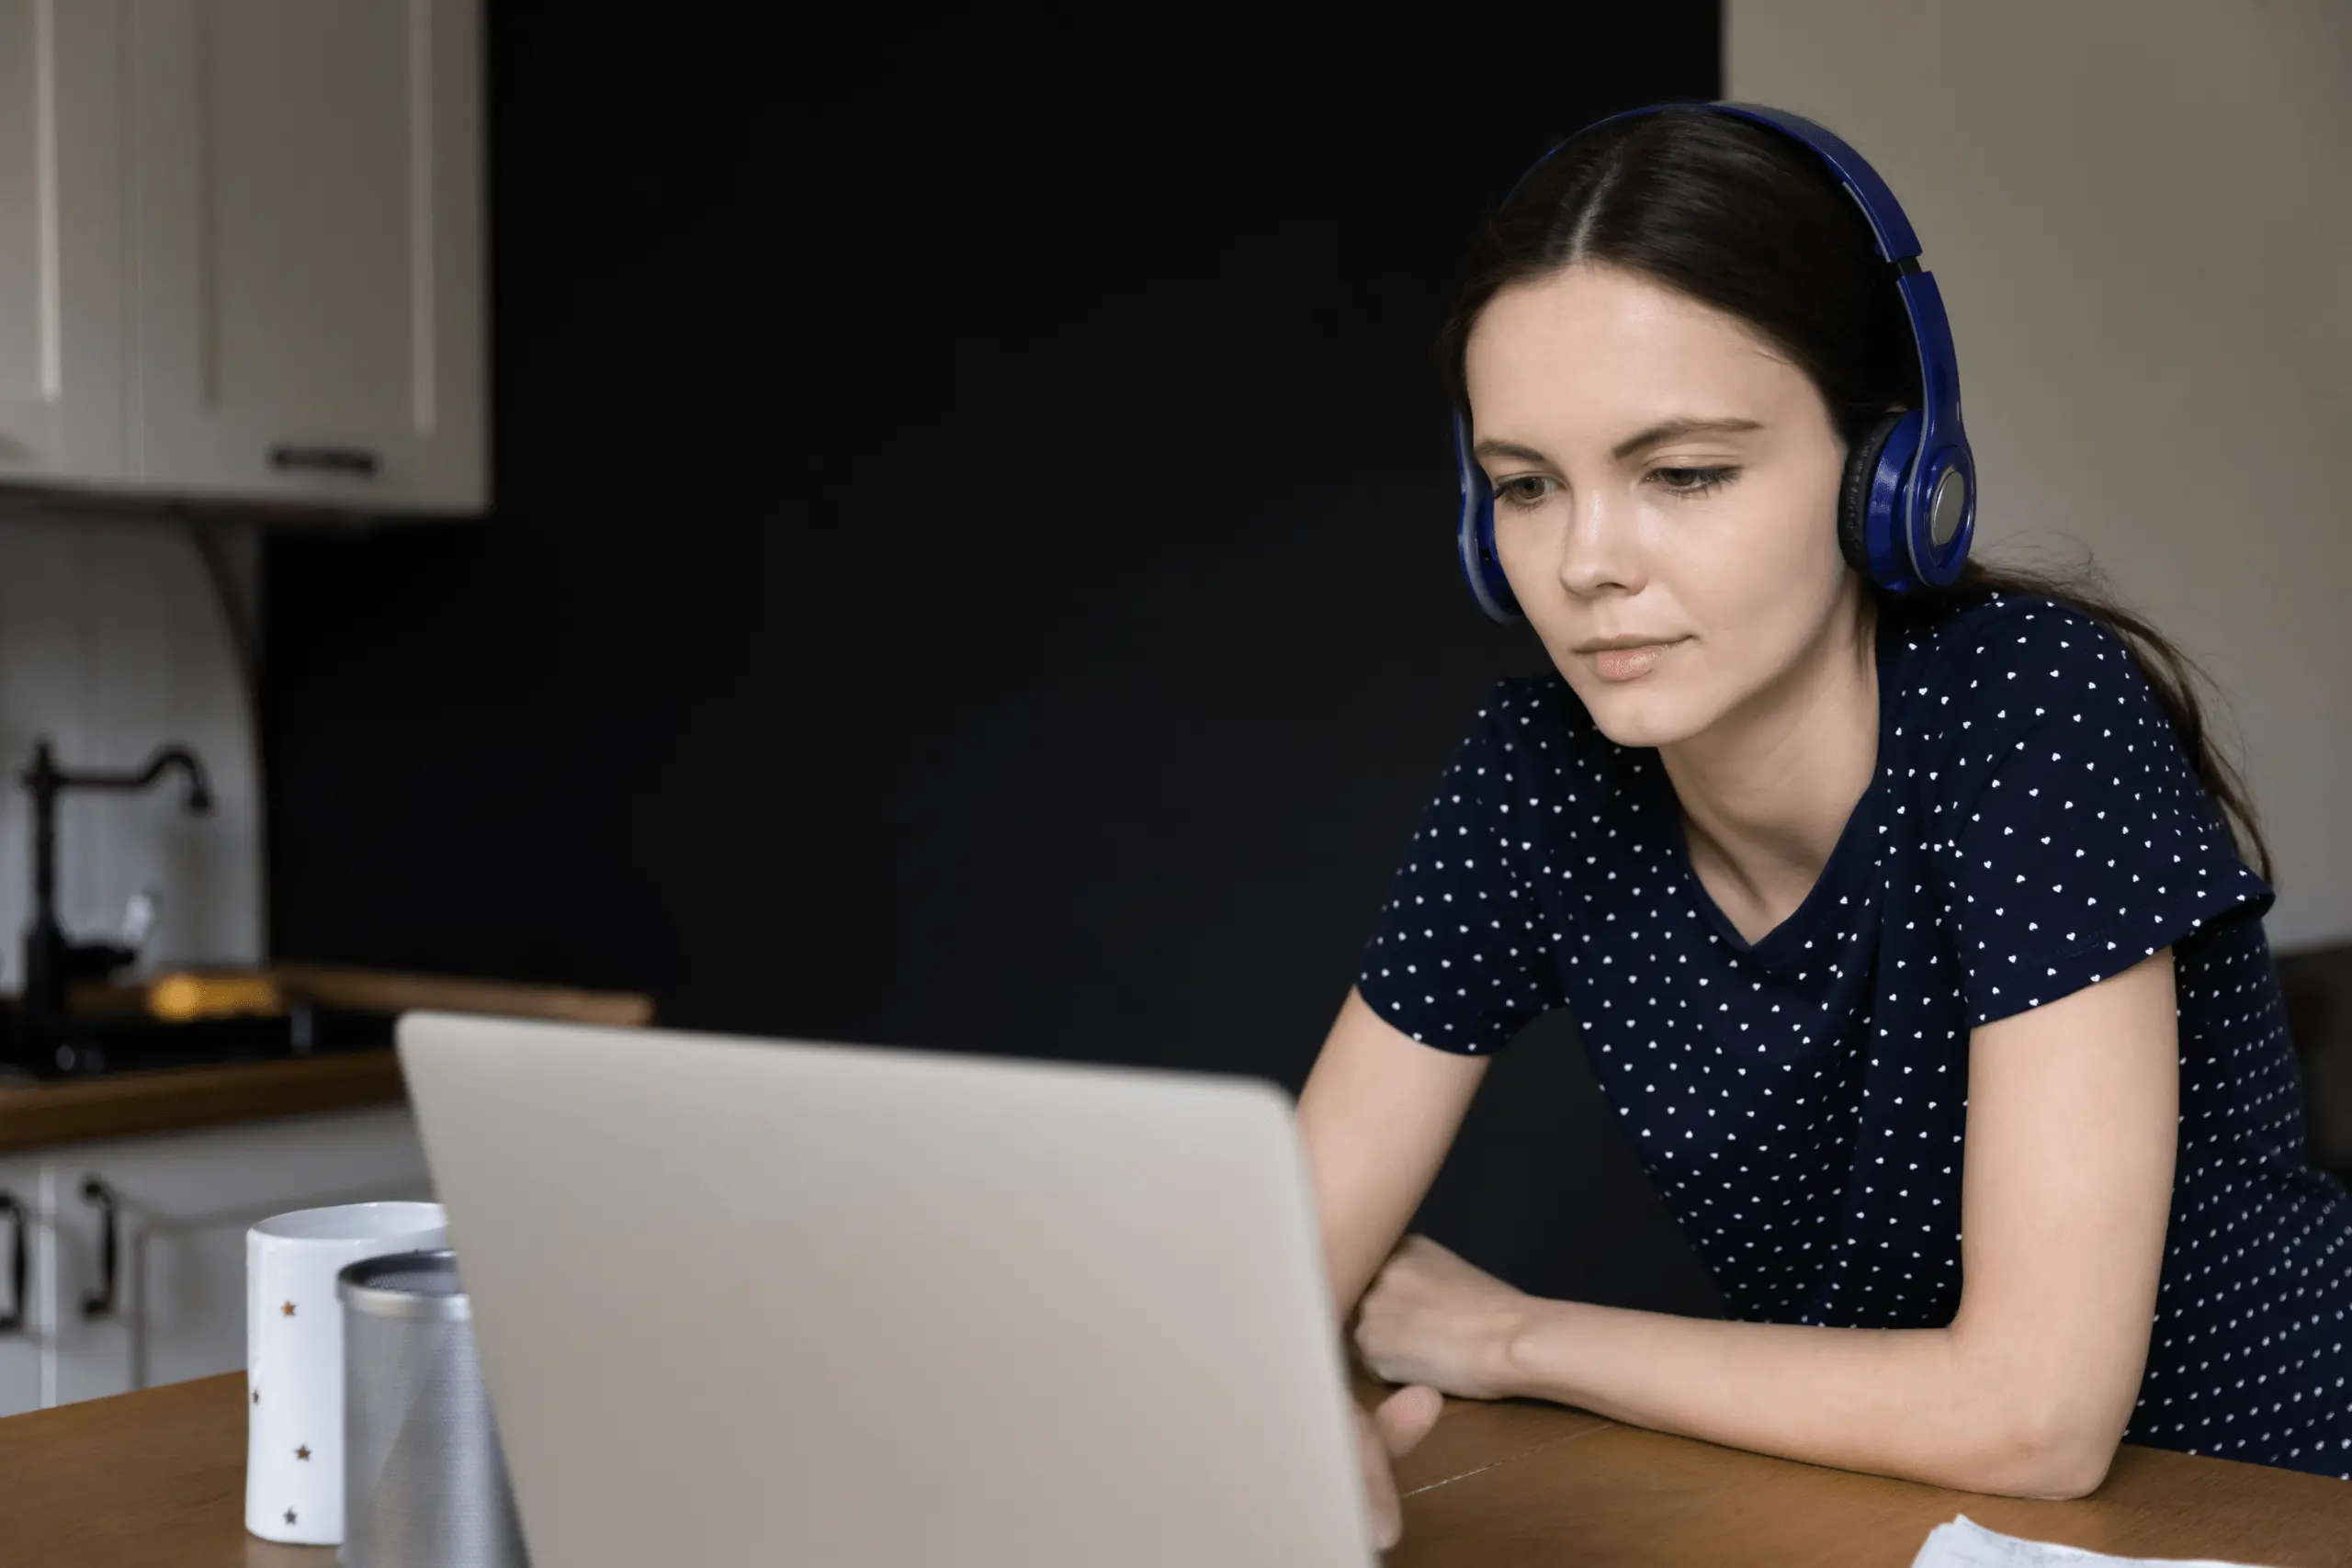 Marmed - Aparaty Słuchowe - Badanie Słuchu - Test Słuchu Online